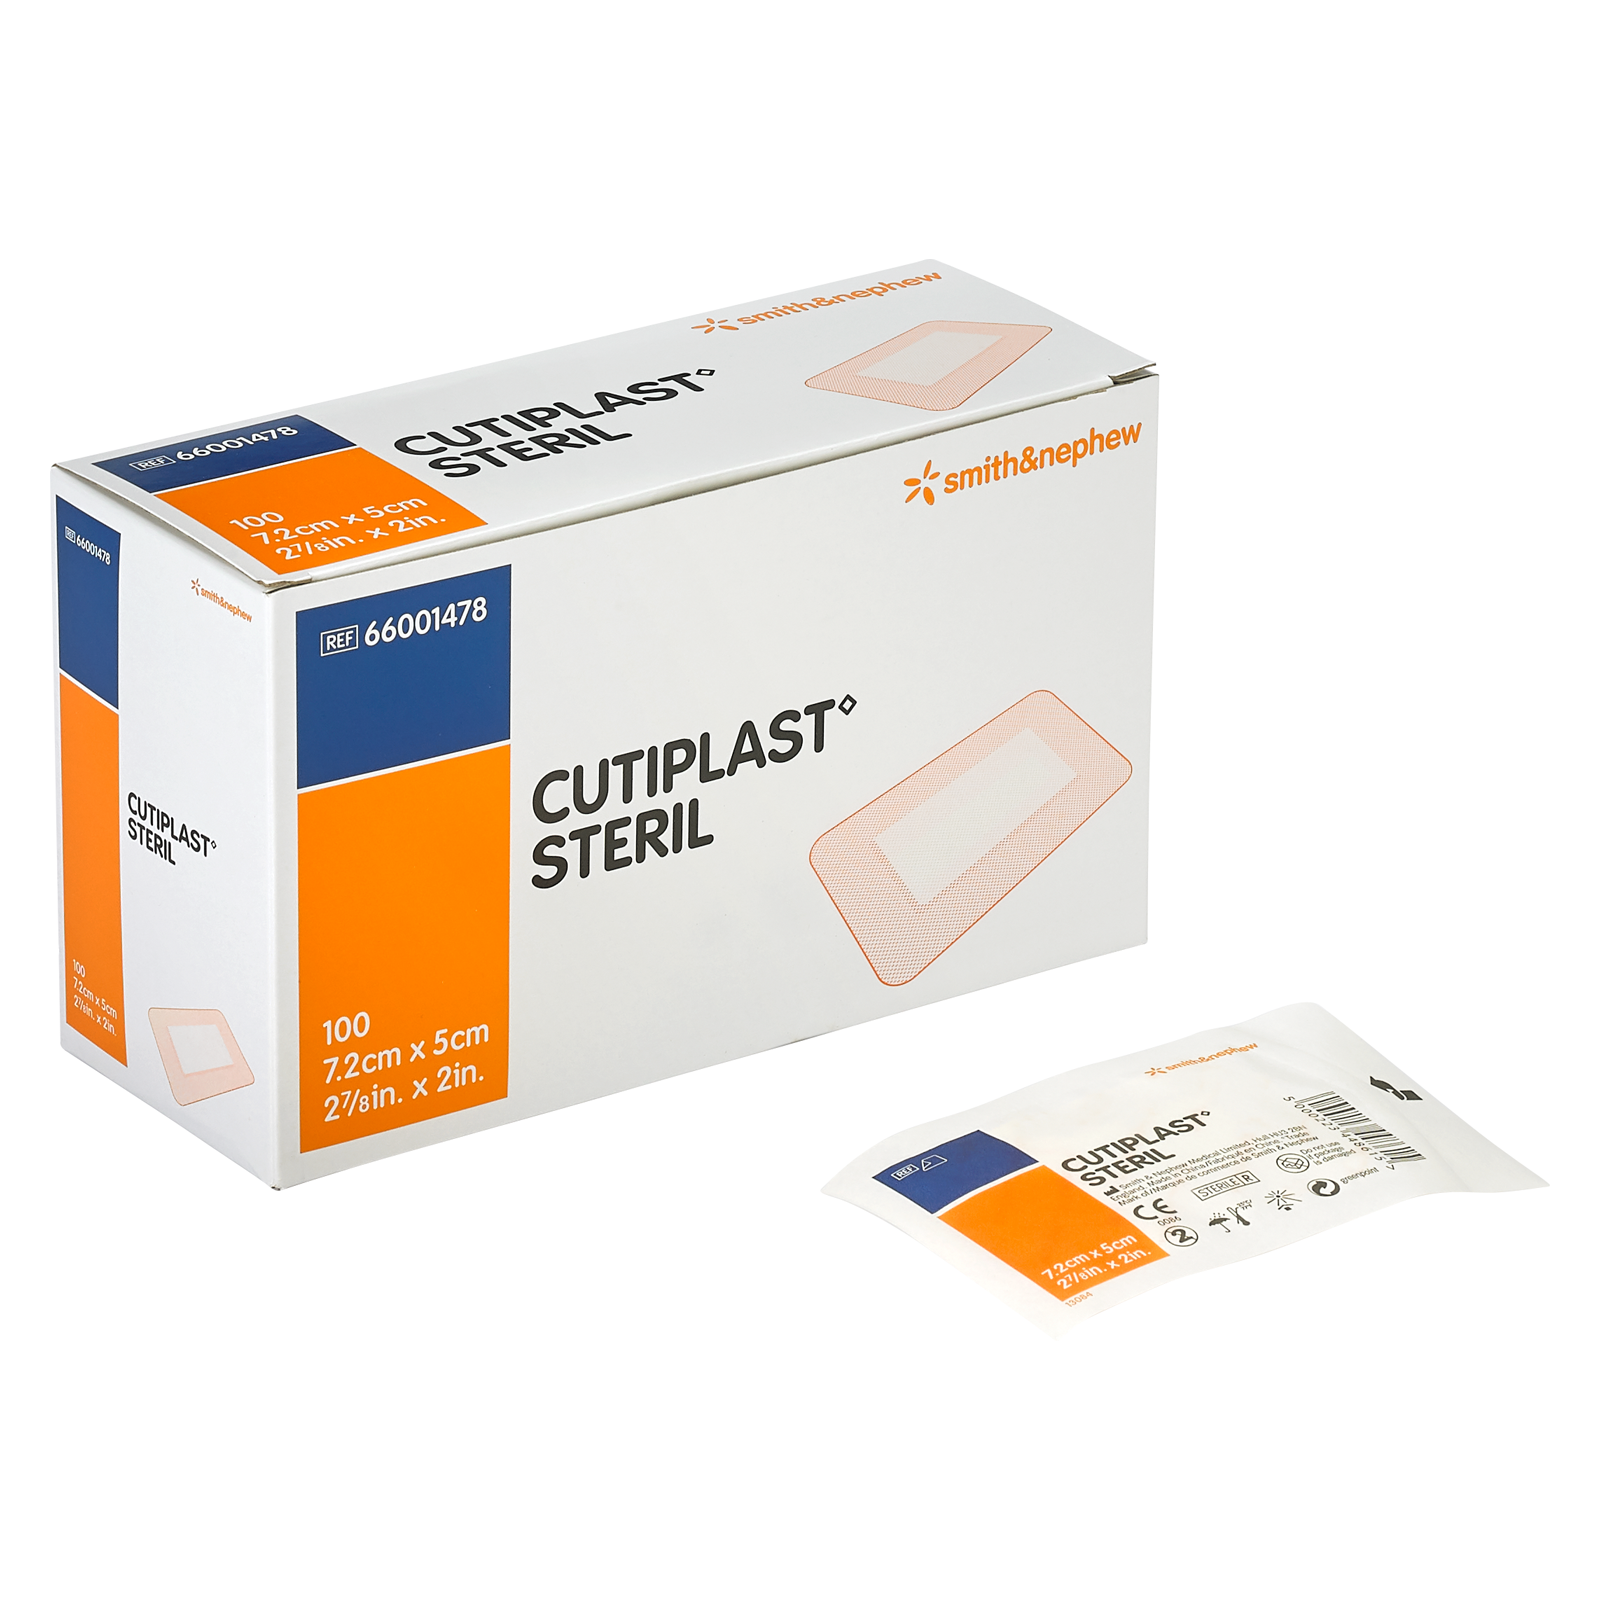 Cutiplast® steril 7.2 cm x 5 cm, 100 Stück